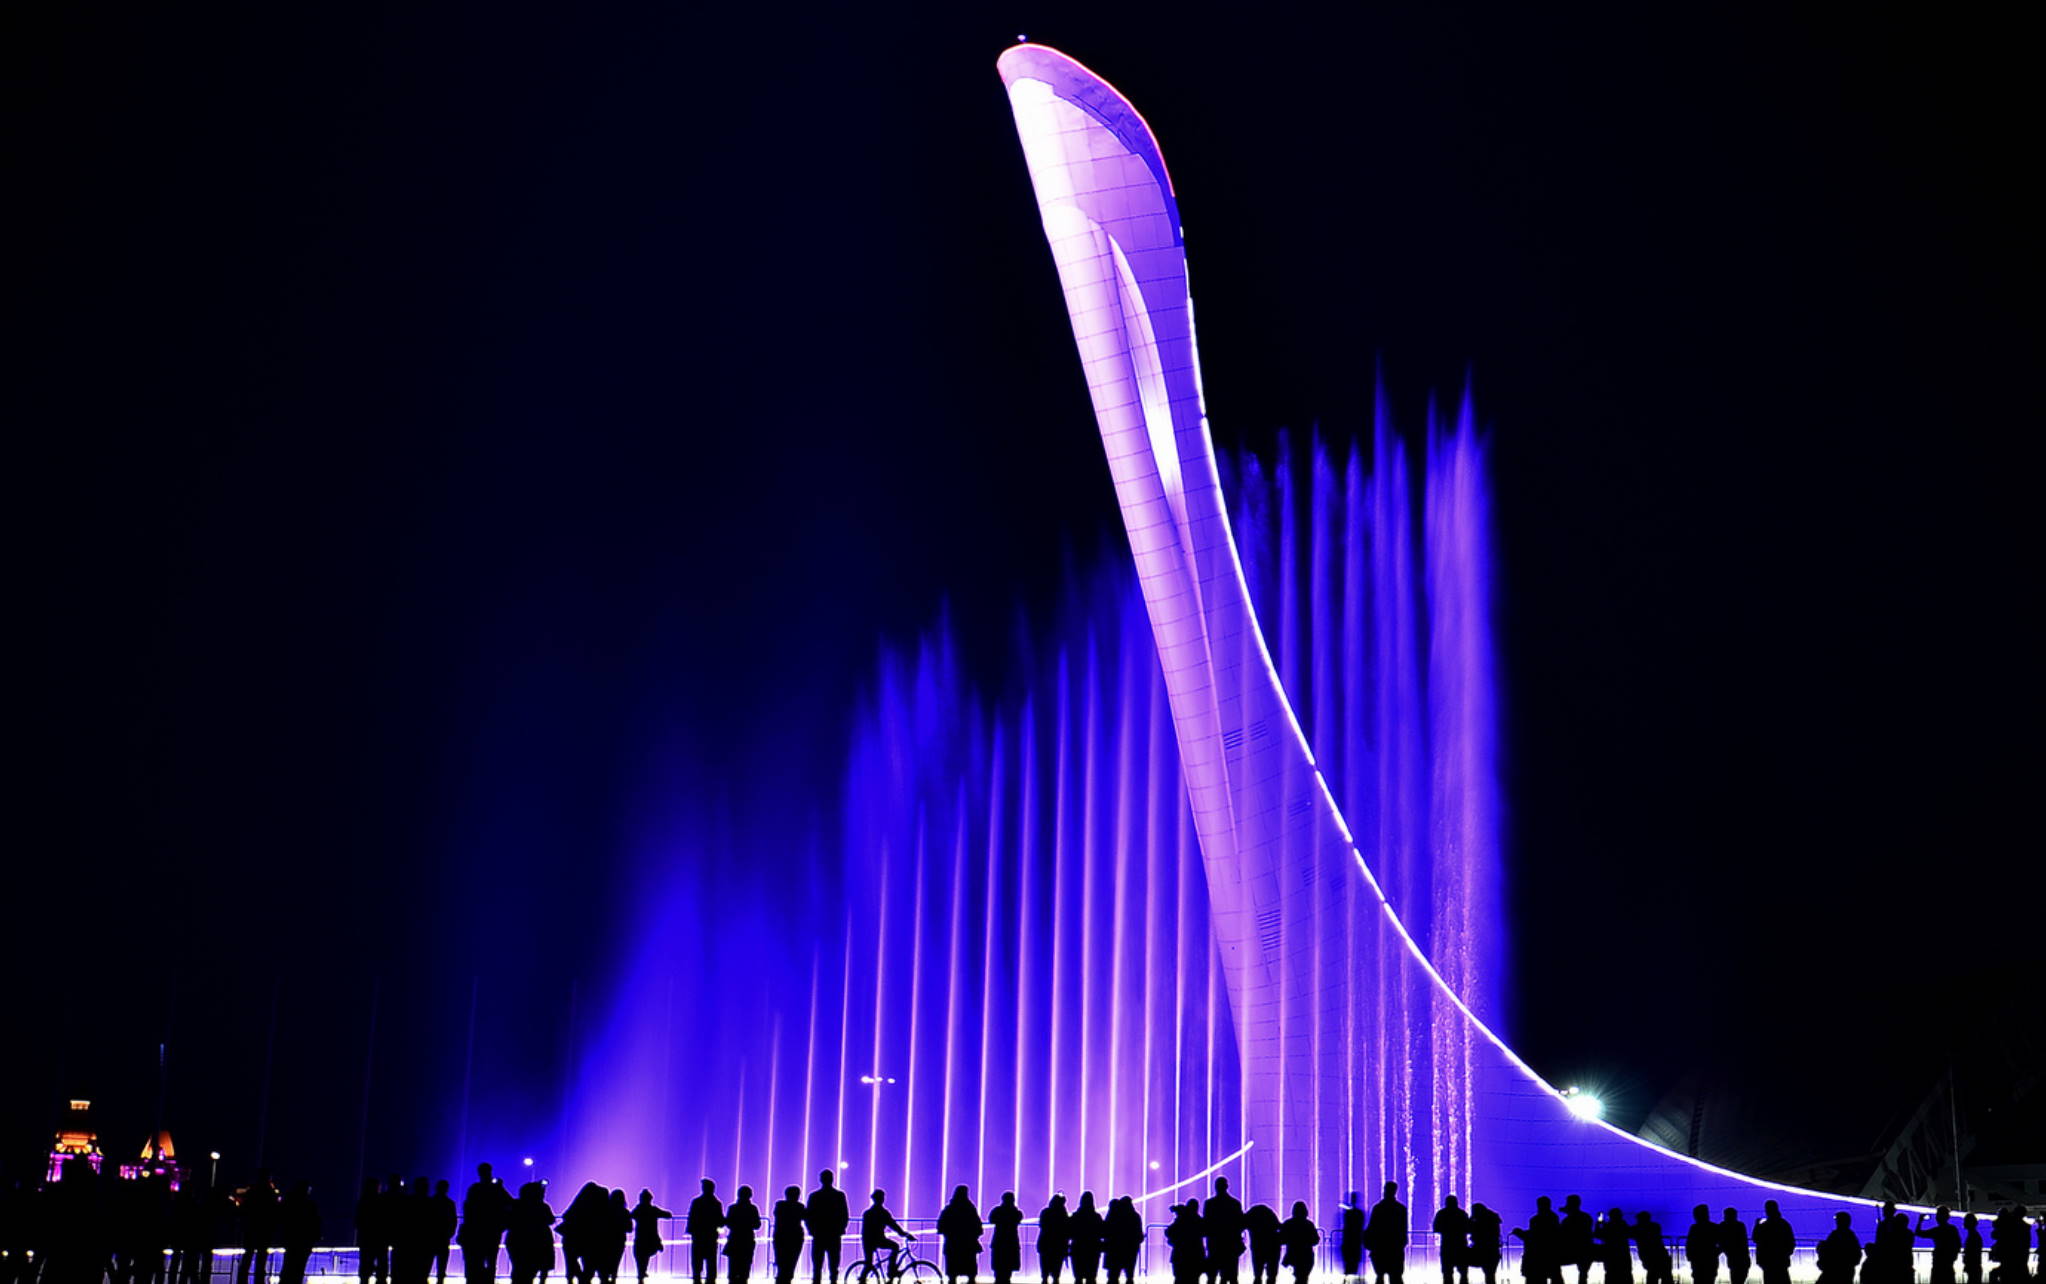 Олимпийский парк сегодня поющие фонтаны. Поющие фонтаны Сочи Олимпийский парк. Поющий фонтан Адлер Олимпийский парк. Сочи шоу фонтанов в Олимпийском парке. Поющий фонтан в Сочи в Олимпийском парке.